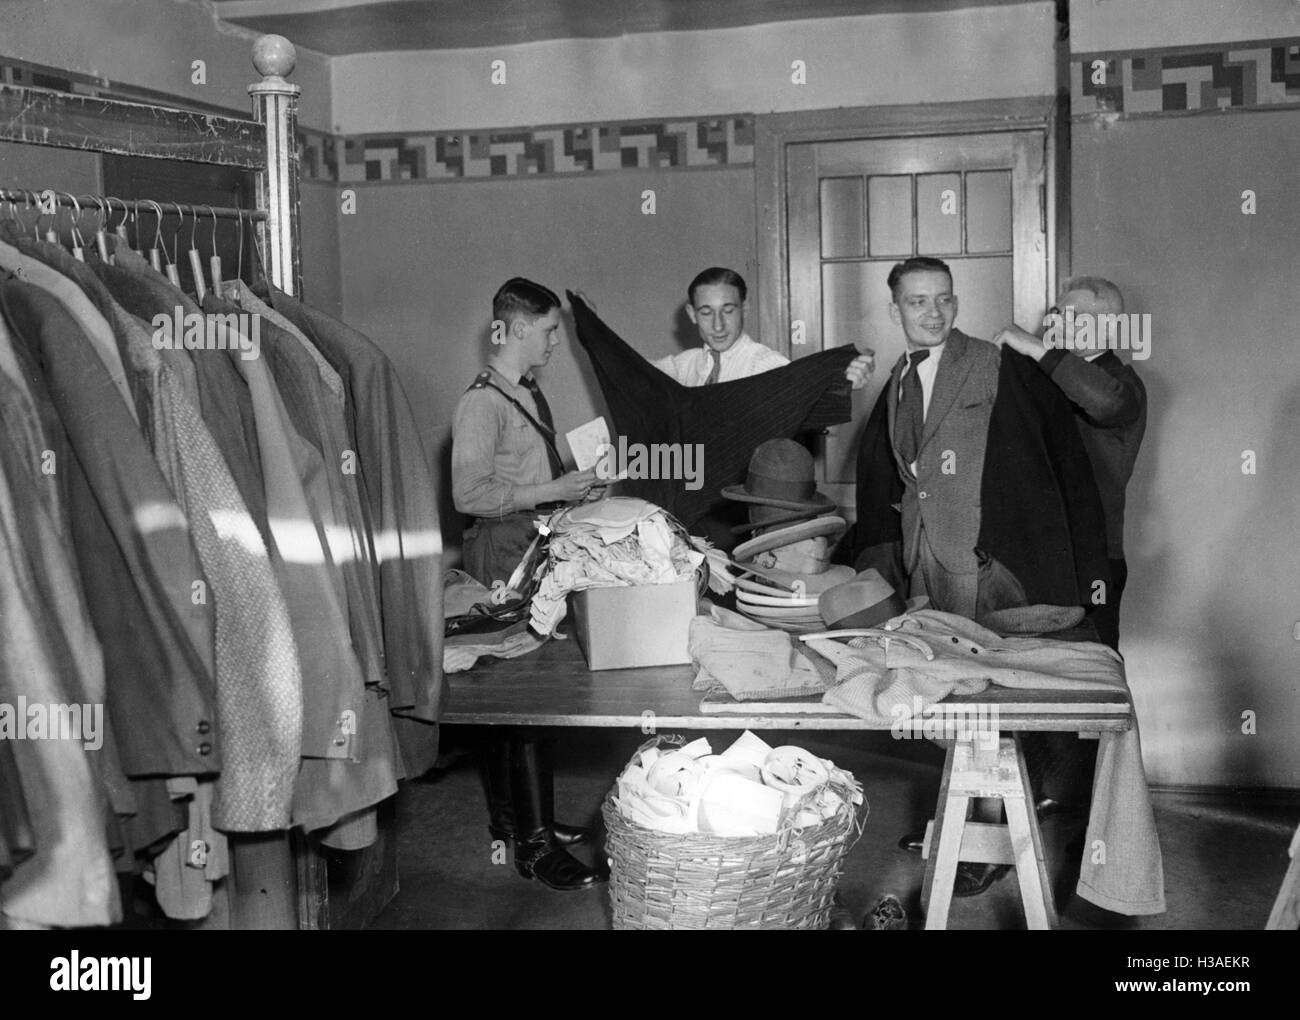 Winterhilfswerk clothing store, 1934 Stock Photo